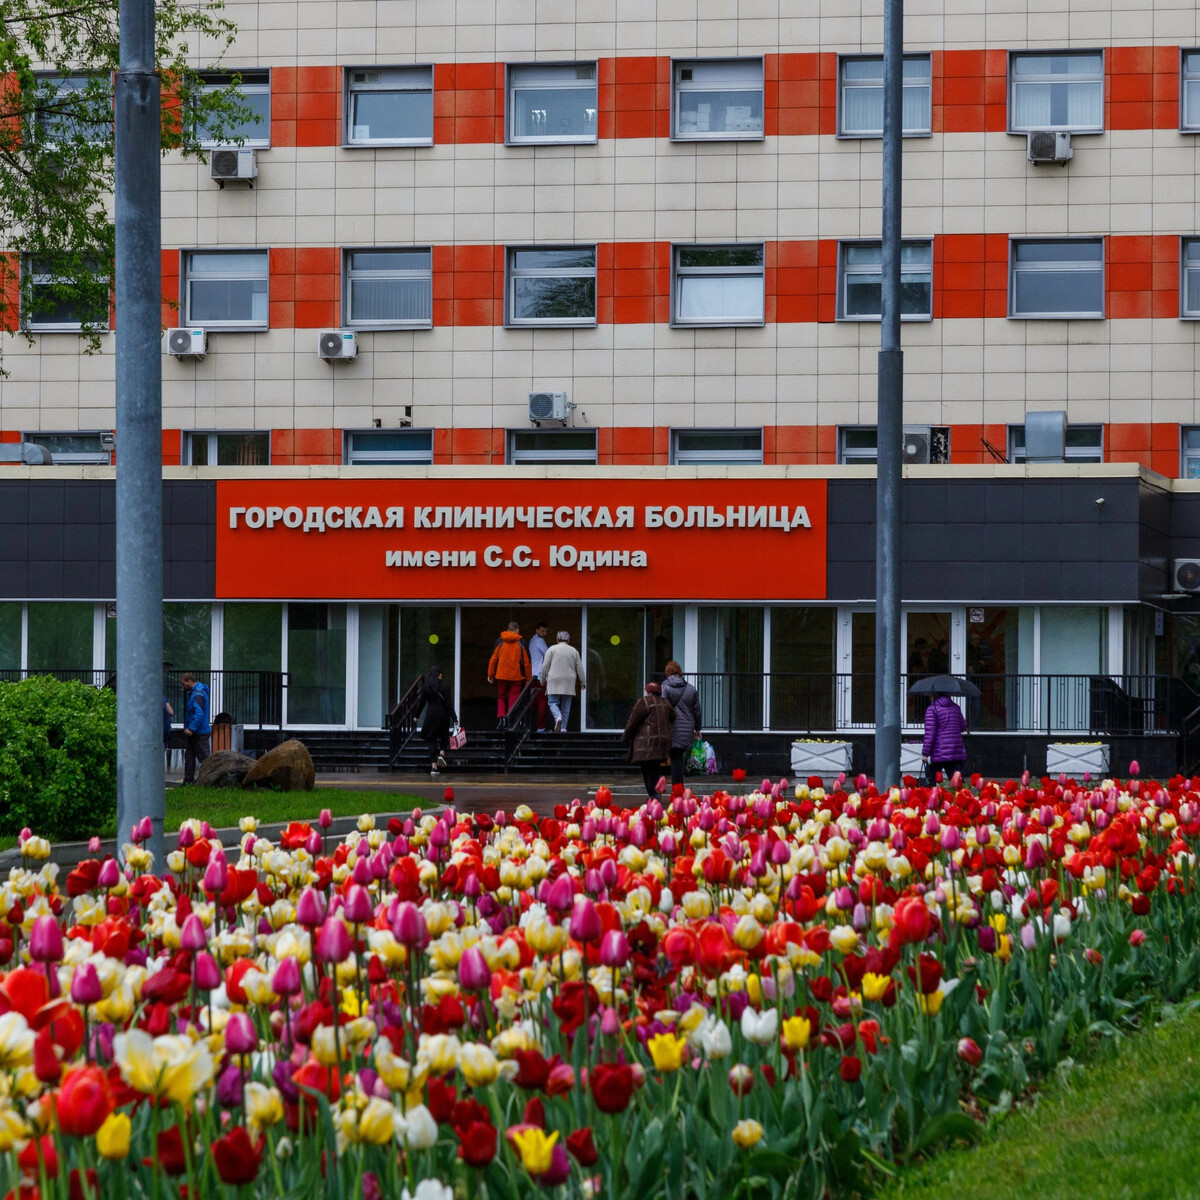 Городская клиническая больница имени с. с. Юдина, Москва